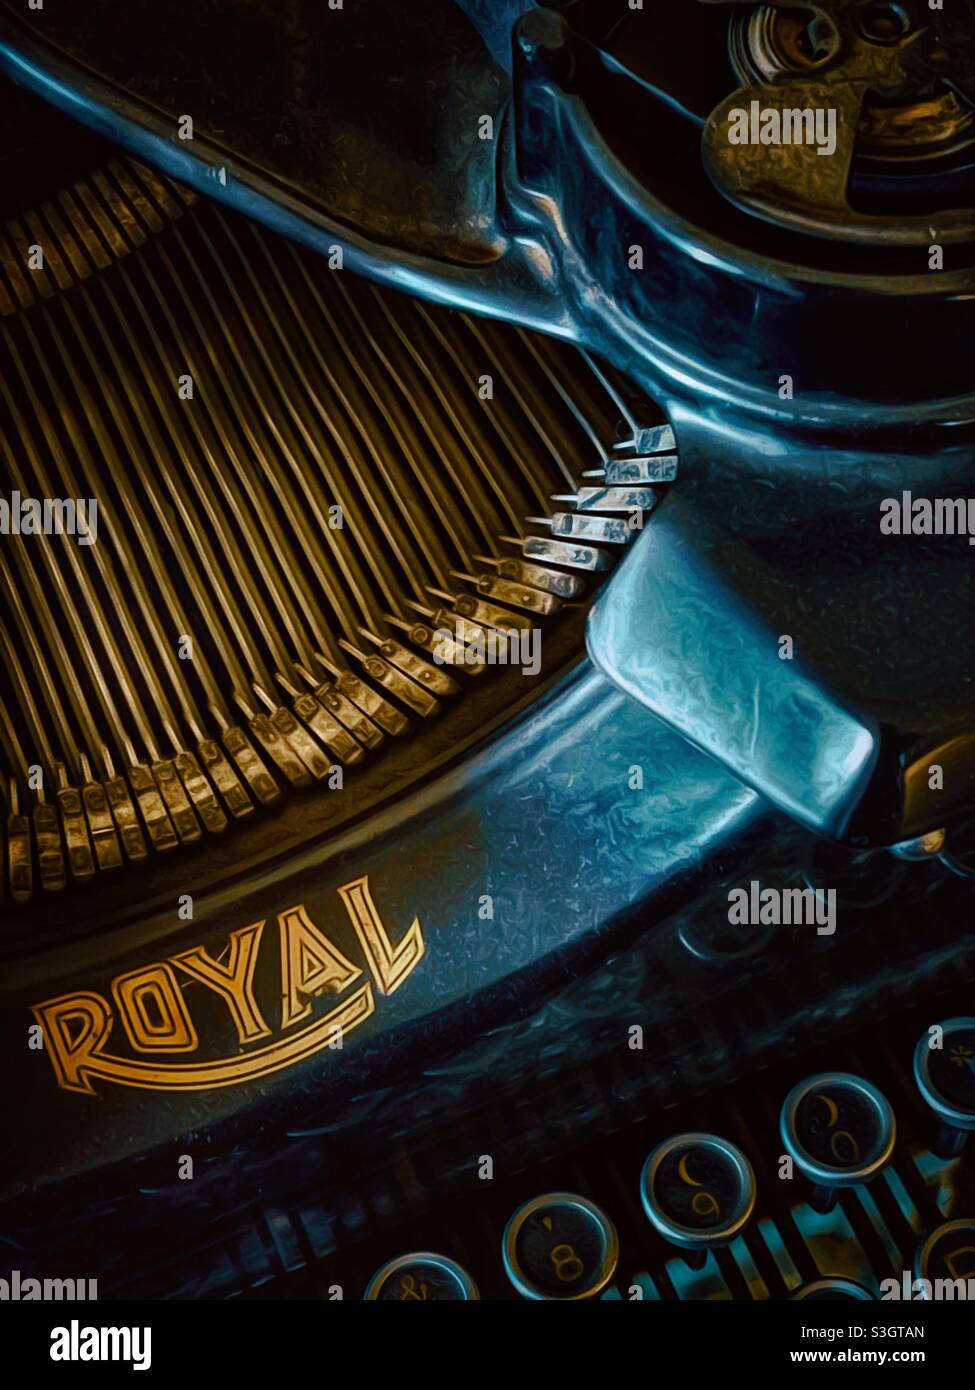 Vintage Royal typewriter Stock Photo